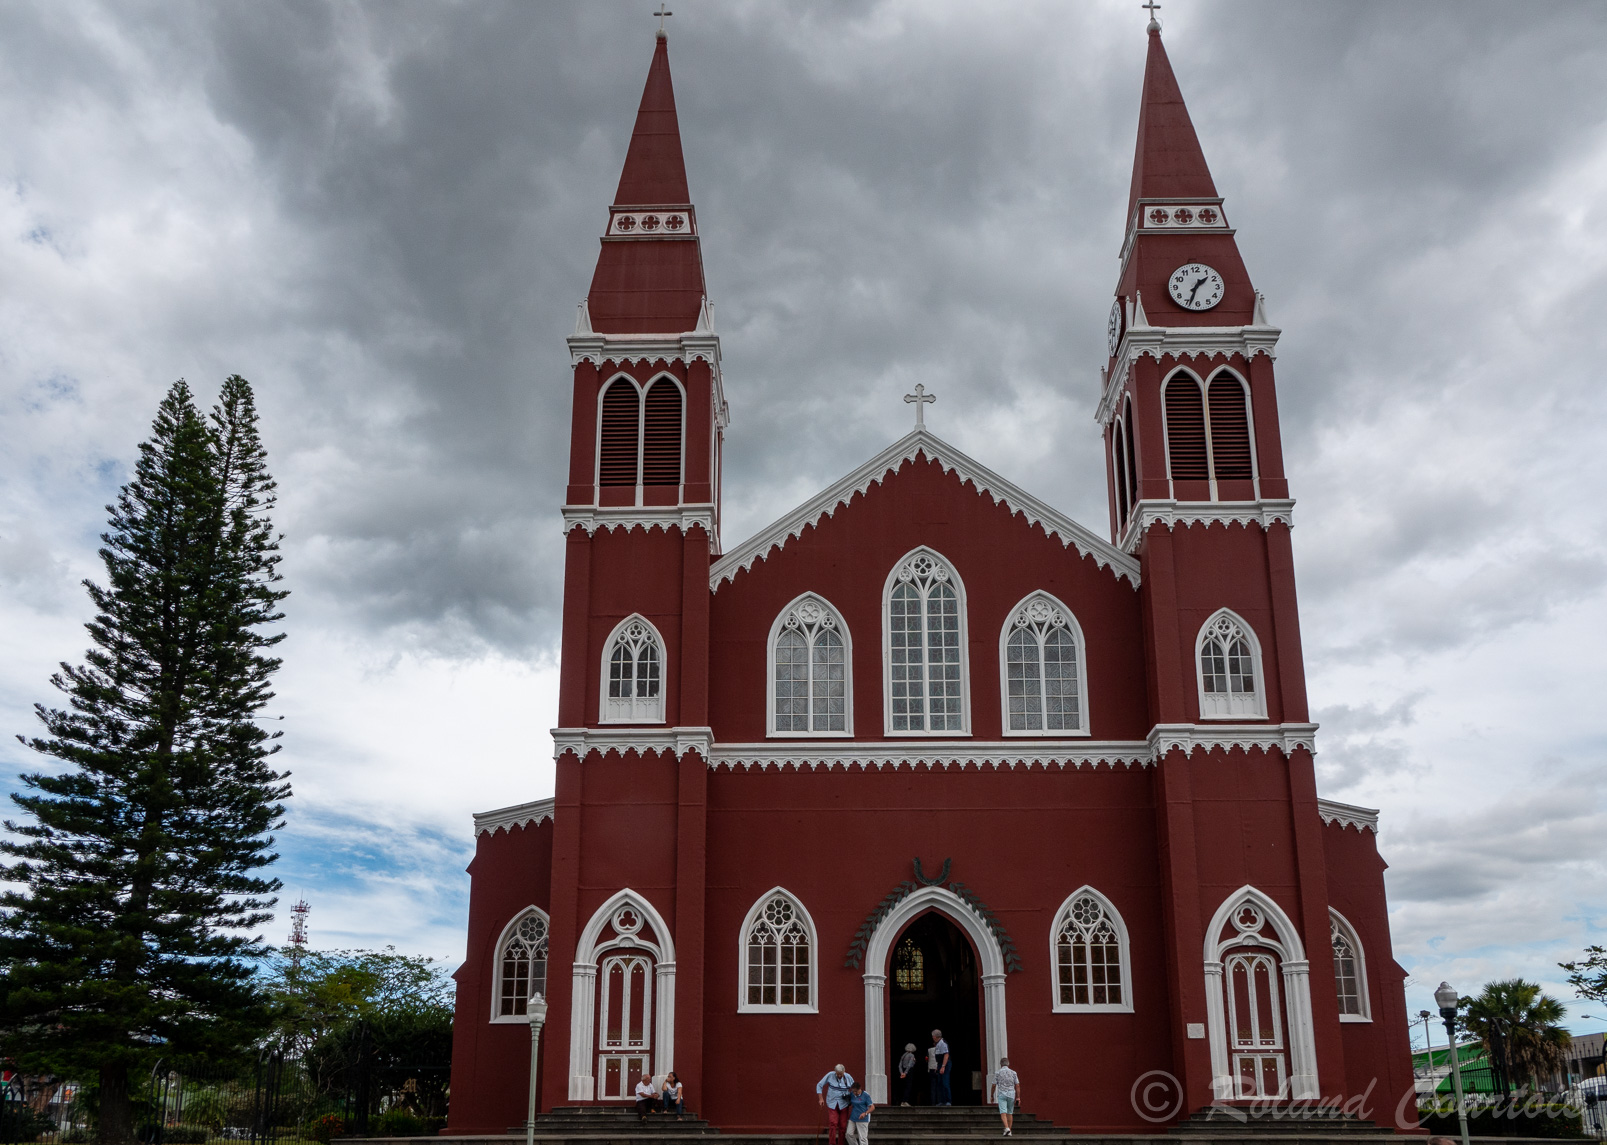 La petite ville de Grecia attire les touristes avec son unique église peinte en rouge foncé. .